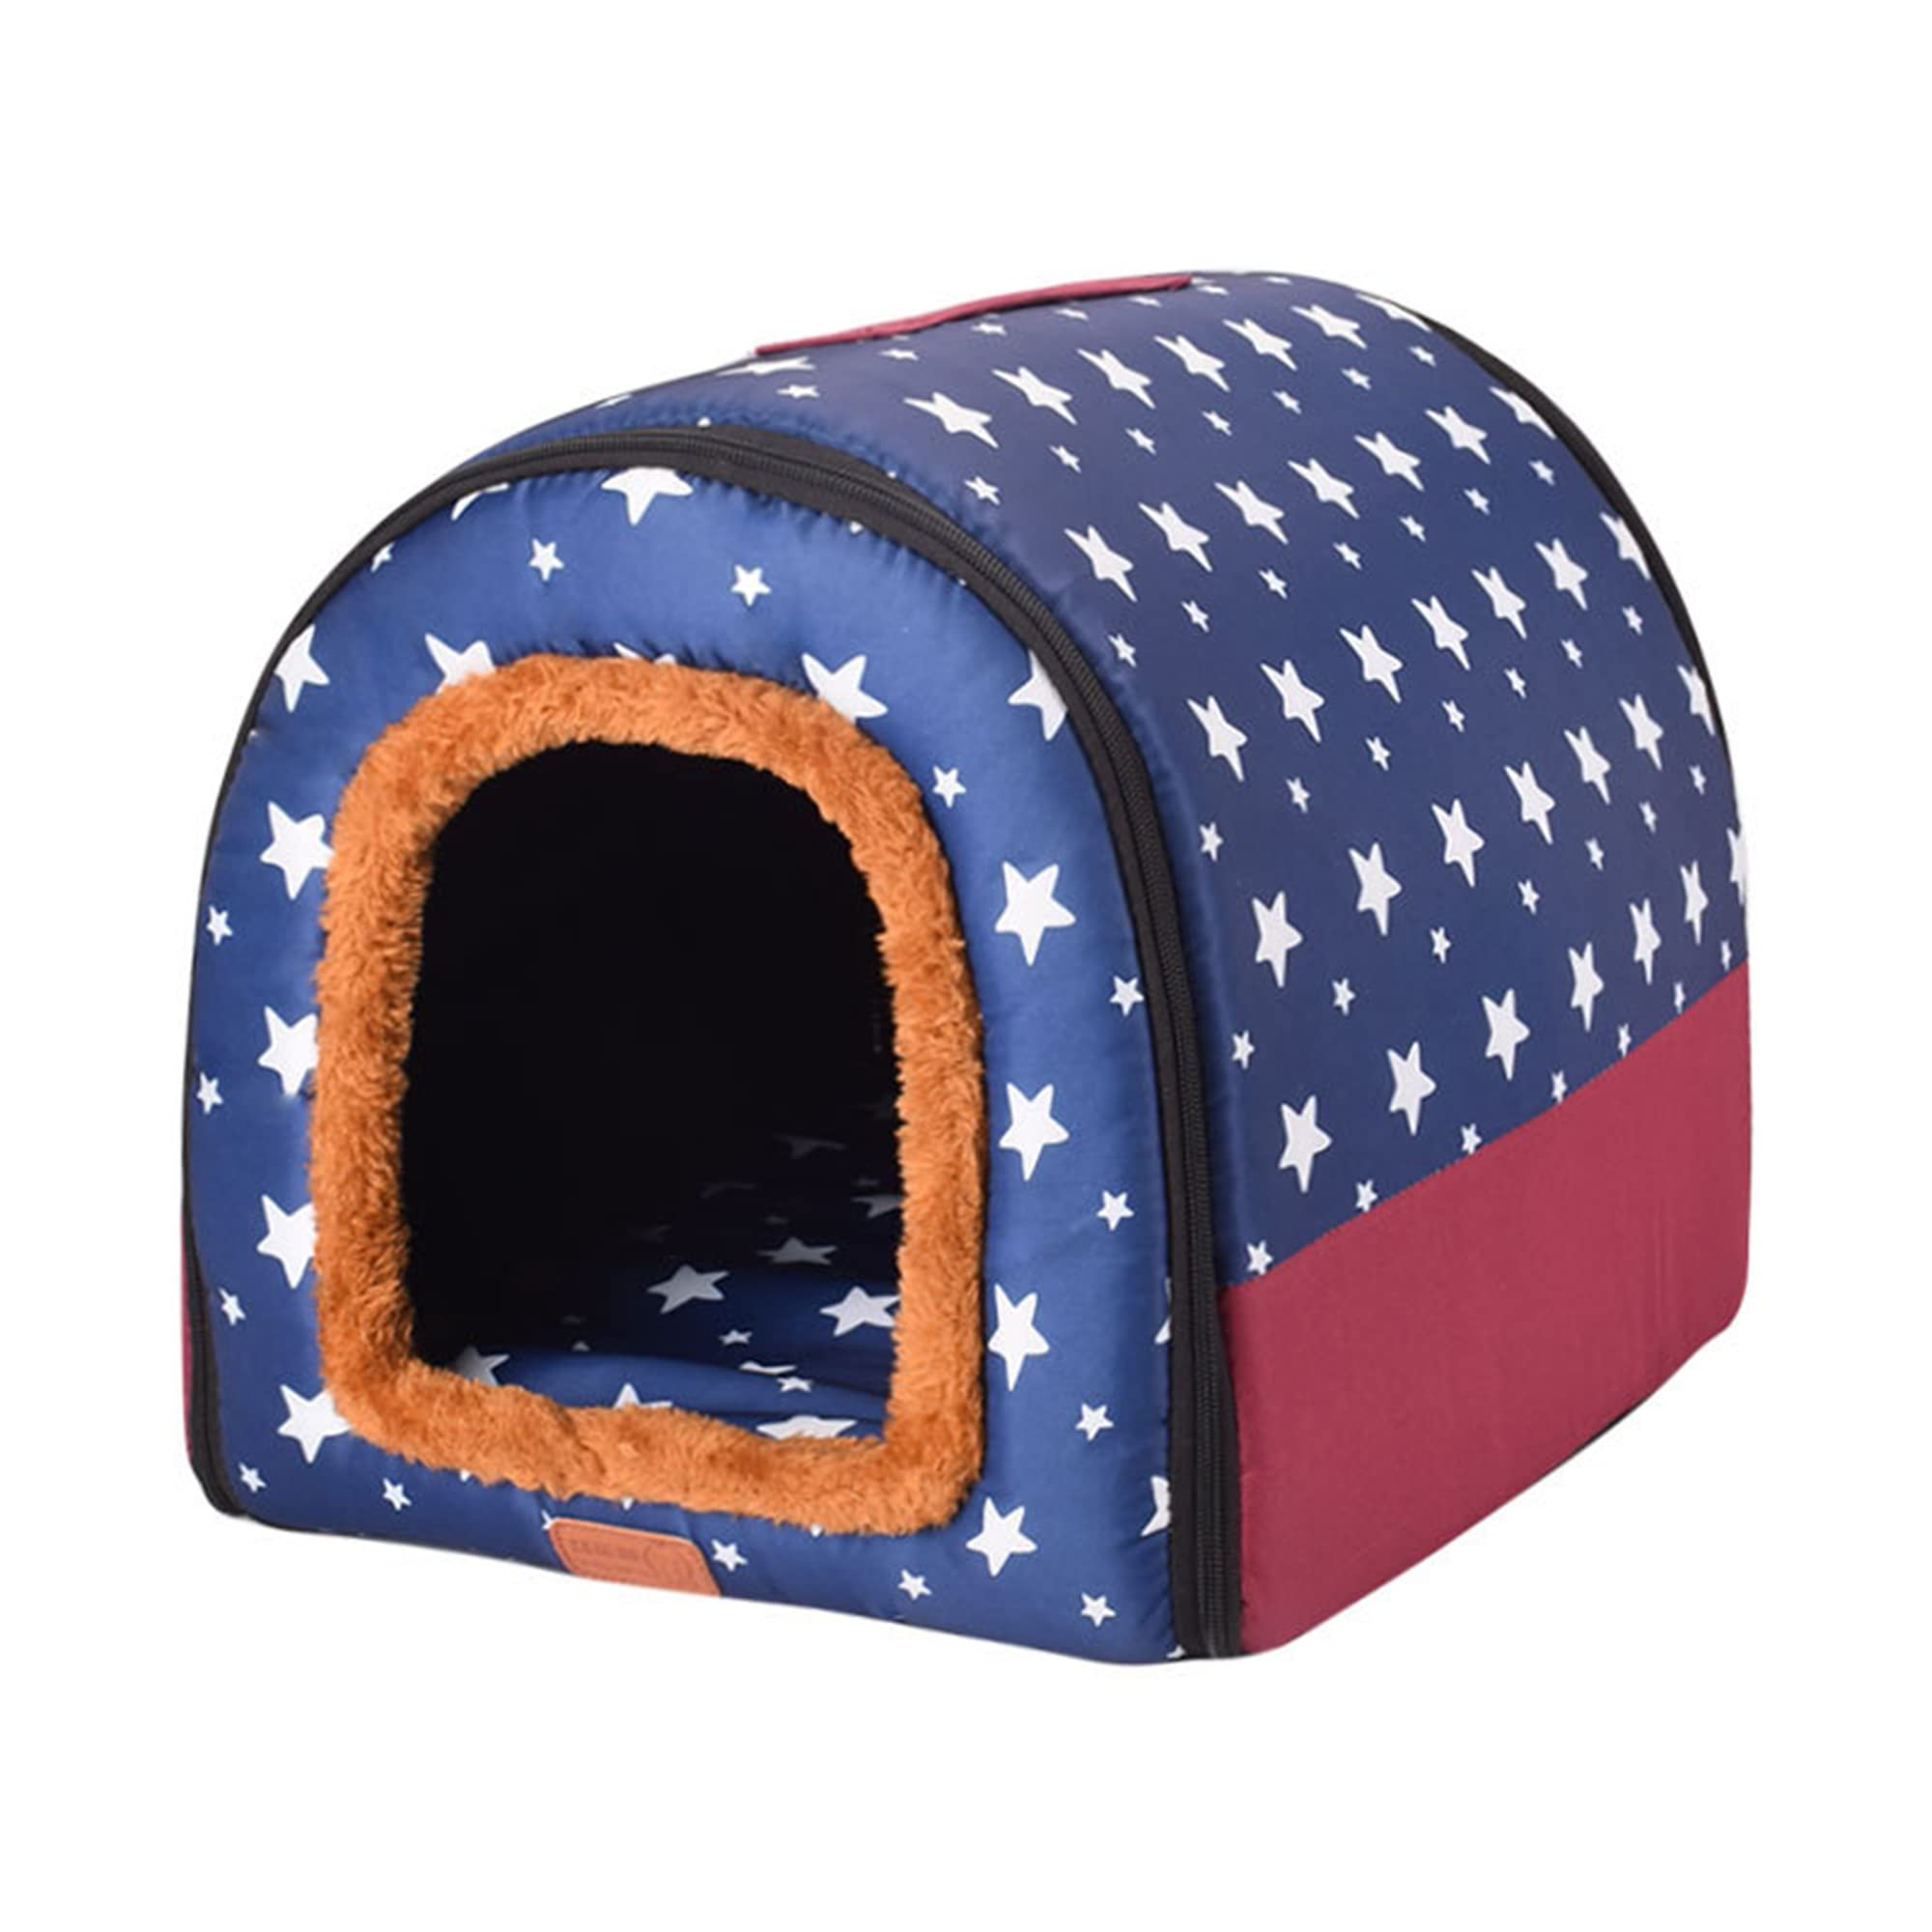 2-in-1 tragbares Iglu-Hundehaus, abnehmbares, waschbares Hundebett mit Dach, groß, warm, faltbar, rutschfest, gemütlich, Hundebett, Schlafnest, Stil D, M